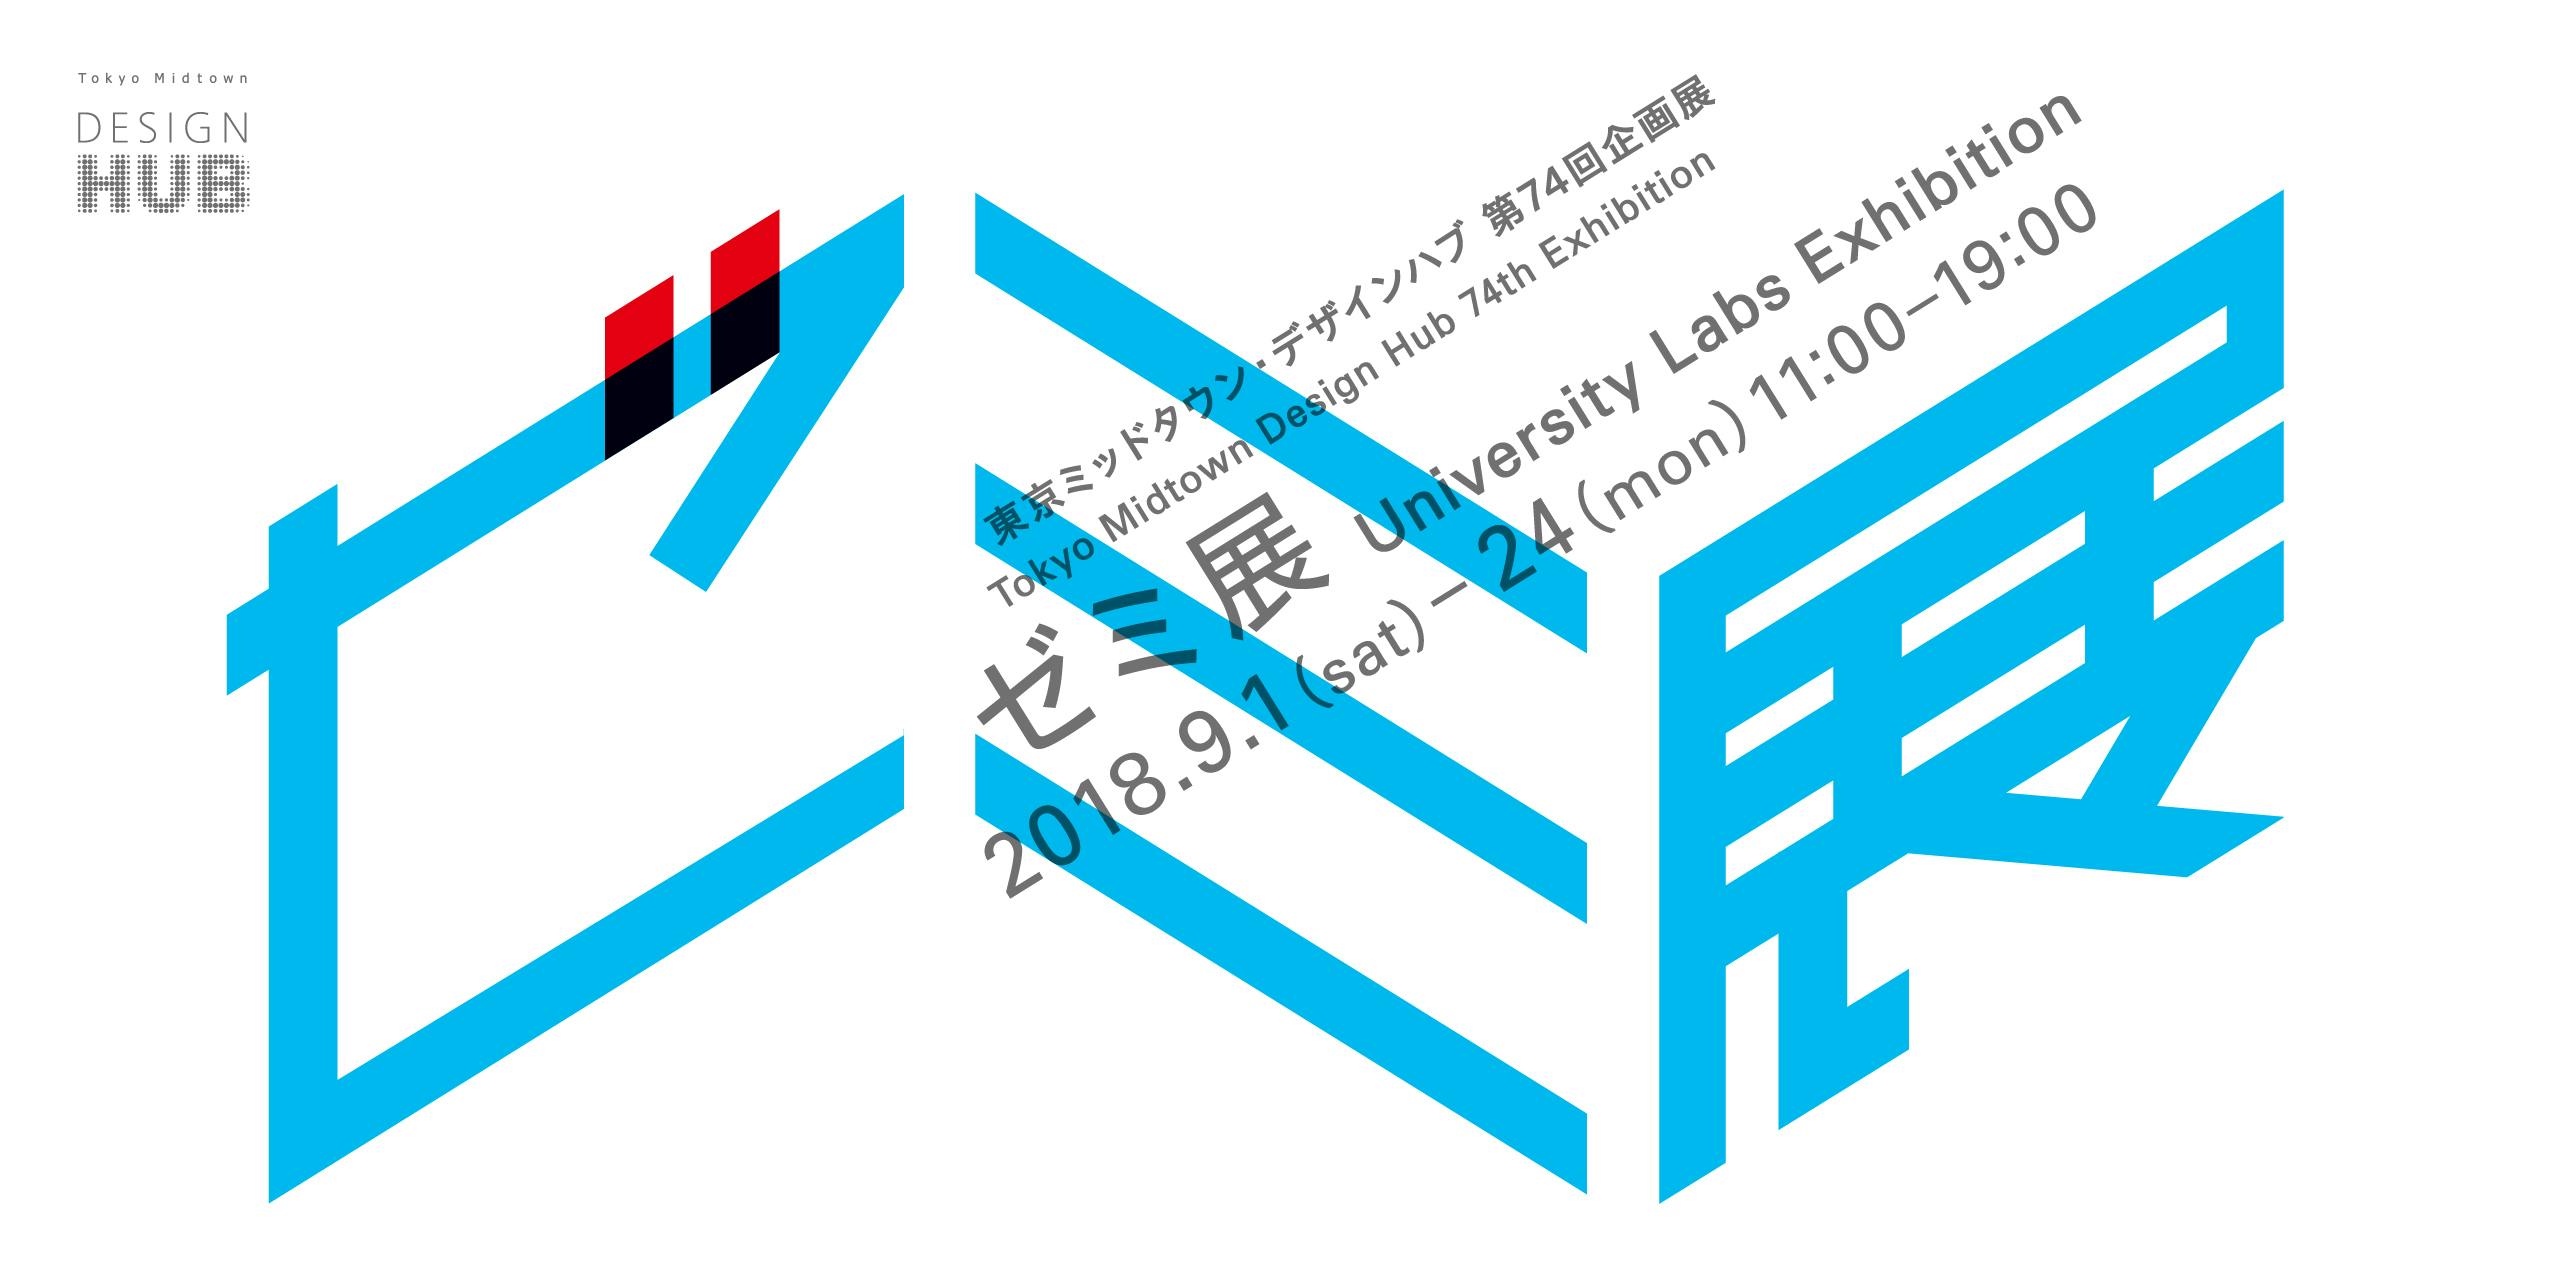 University Labs Exhibition